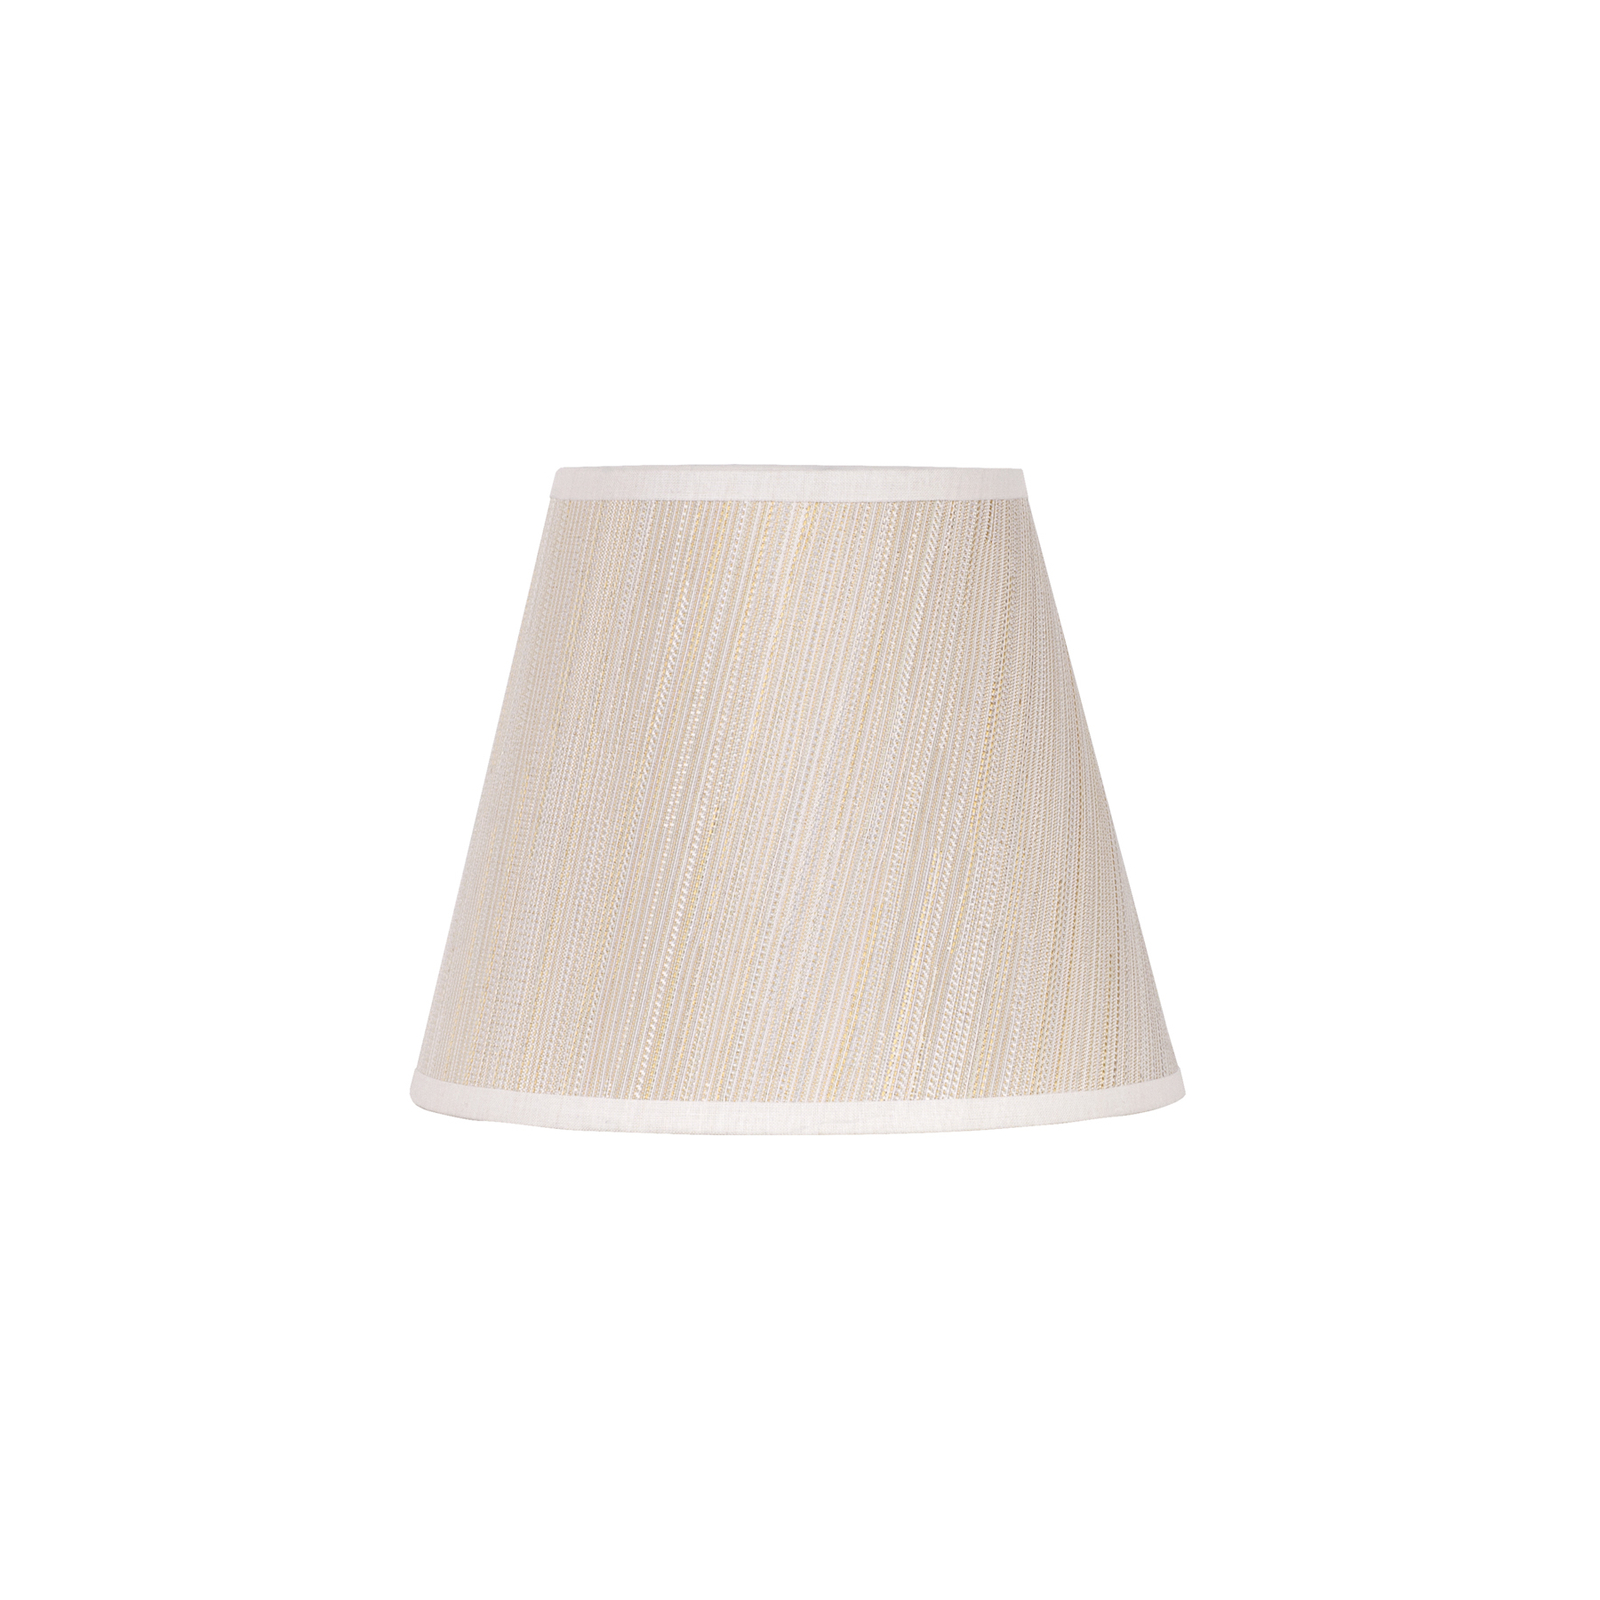 Lampeskjerm Sofia høyde 15,5 cm hvit/gull stripete